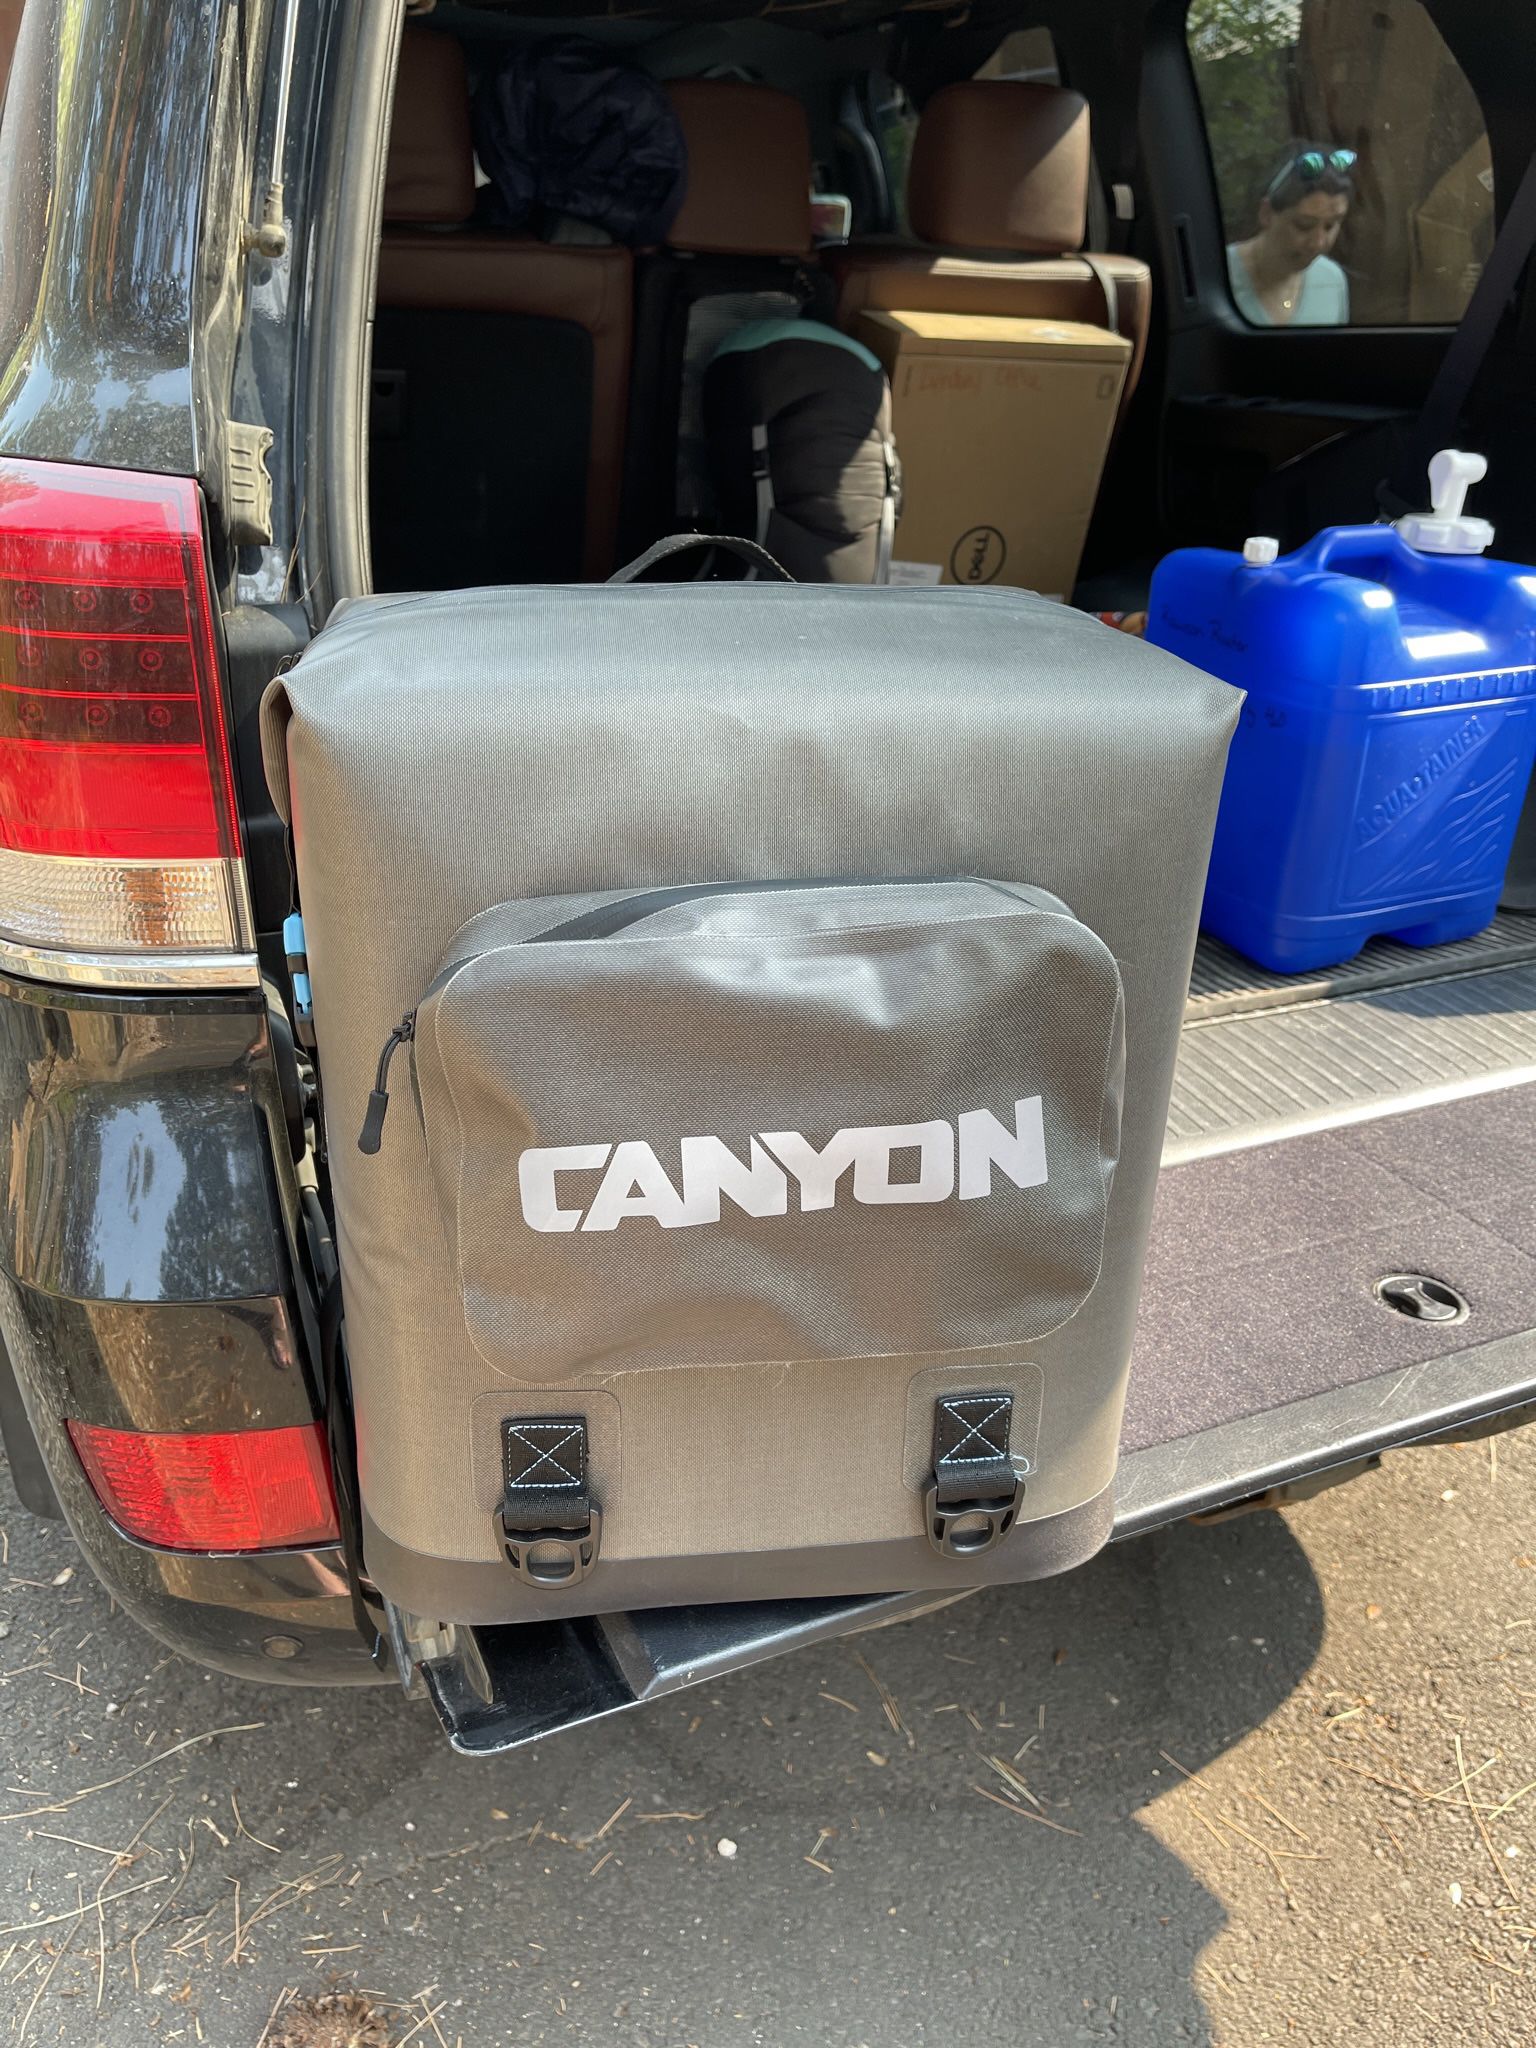 Canyon Cooler - Nomad Go Soft Cooler